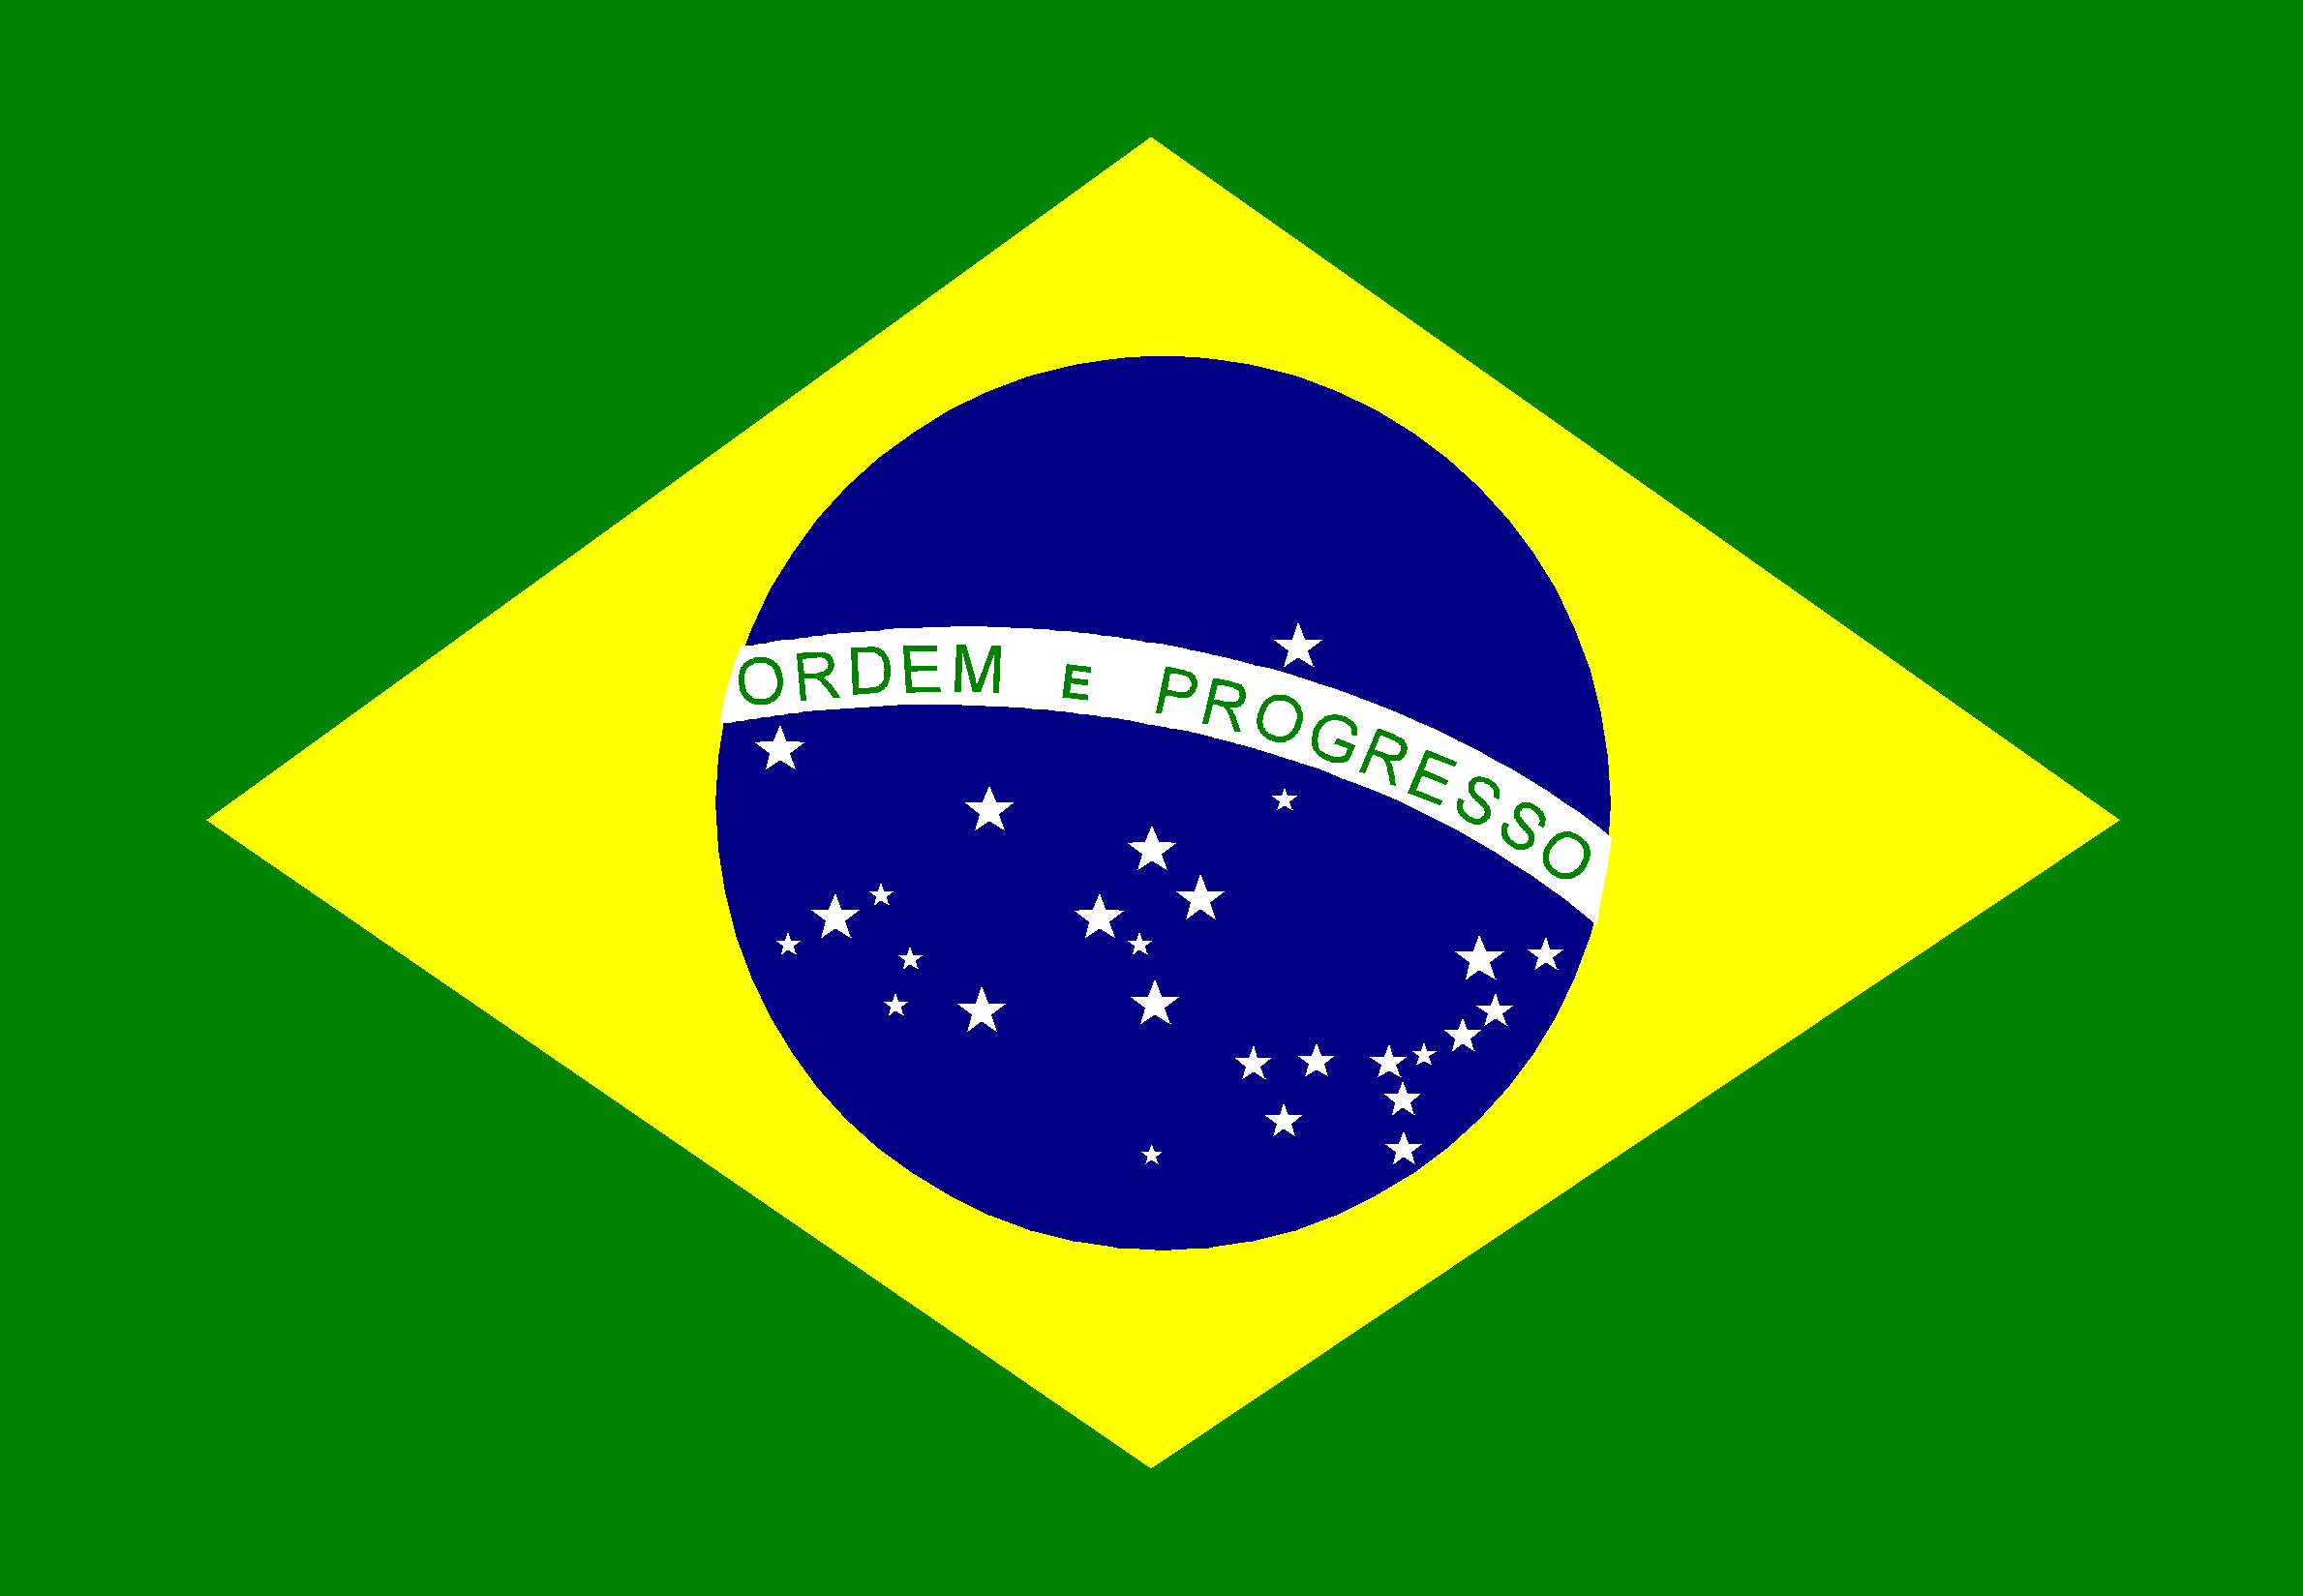 banderia do brasil